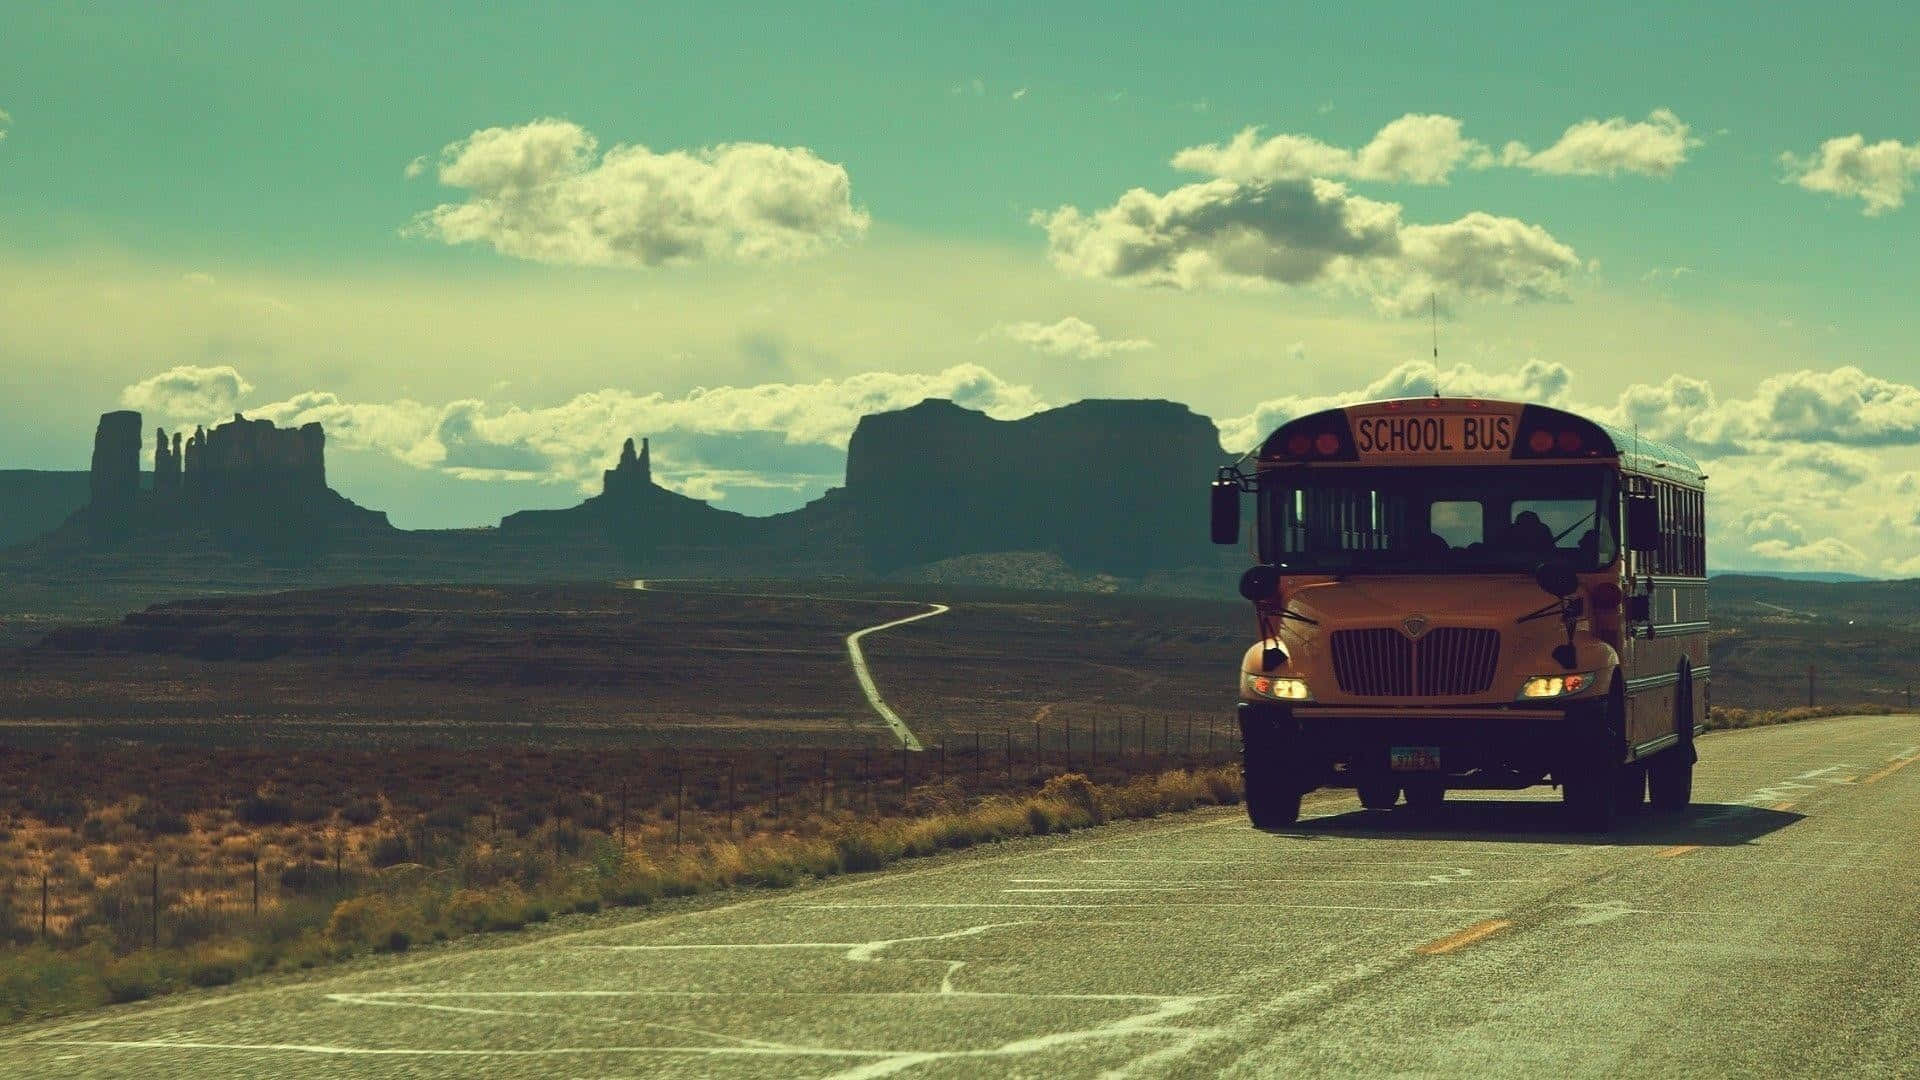 Imágenesde Autobuses Escolares Antiguos